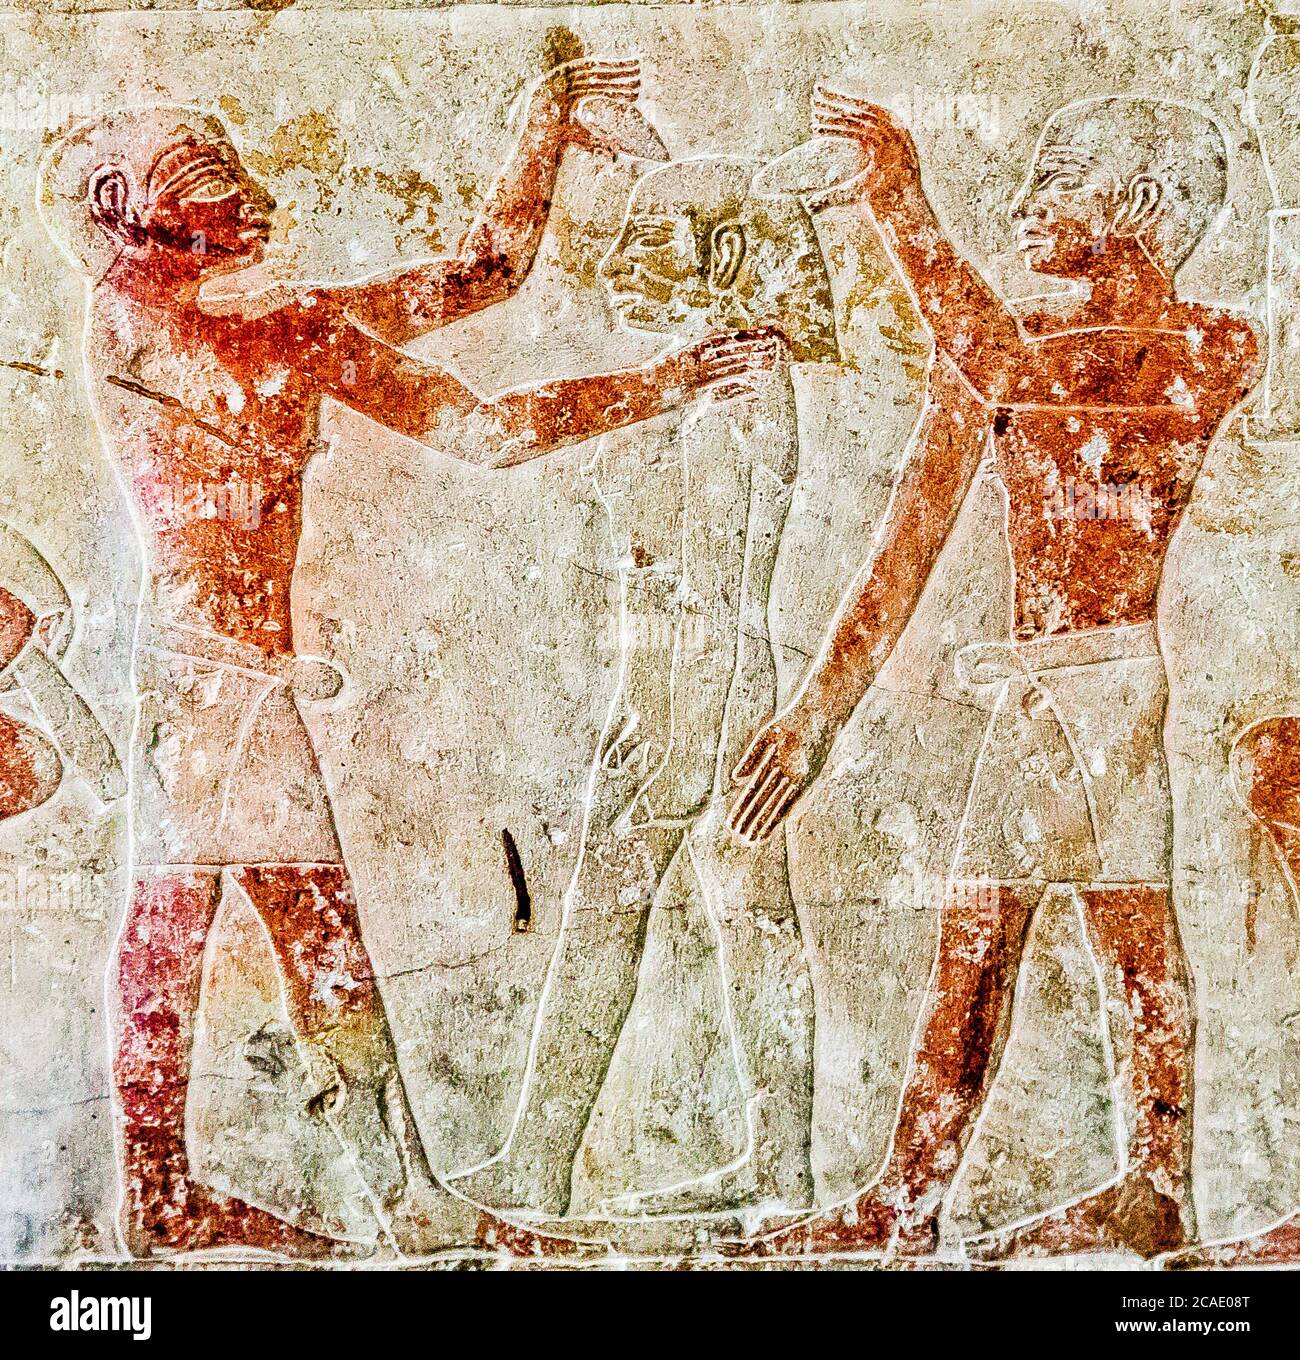 Egypte, le Caire, Musée égyptien, du tombeau de Kaemrehu, Saqqara, détail d'un grand relief représentant des artisans : Sculpture d'une statue. Banque D'Images